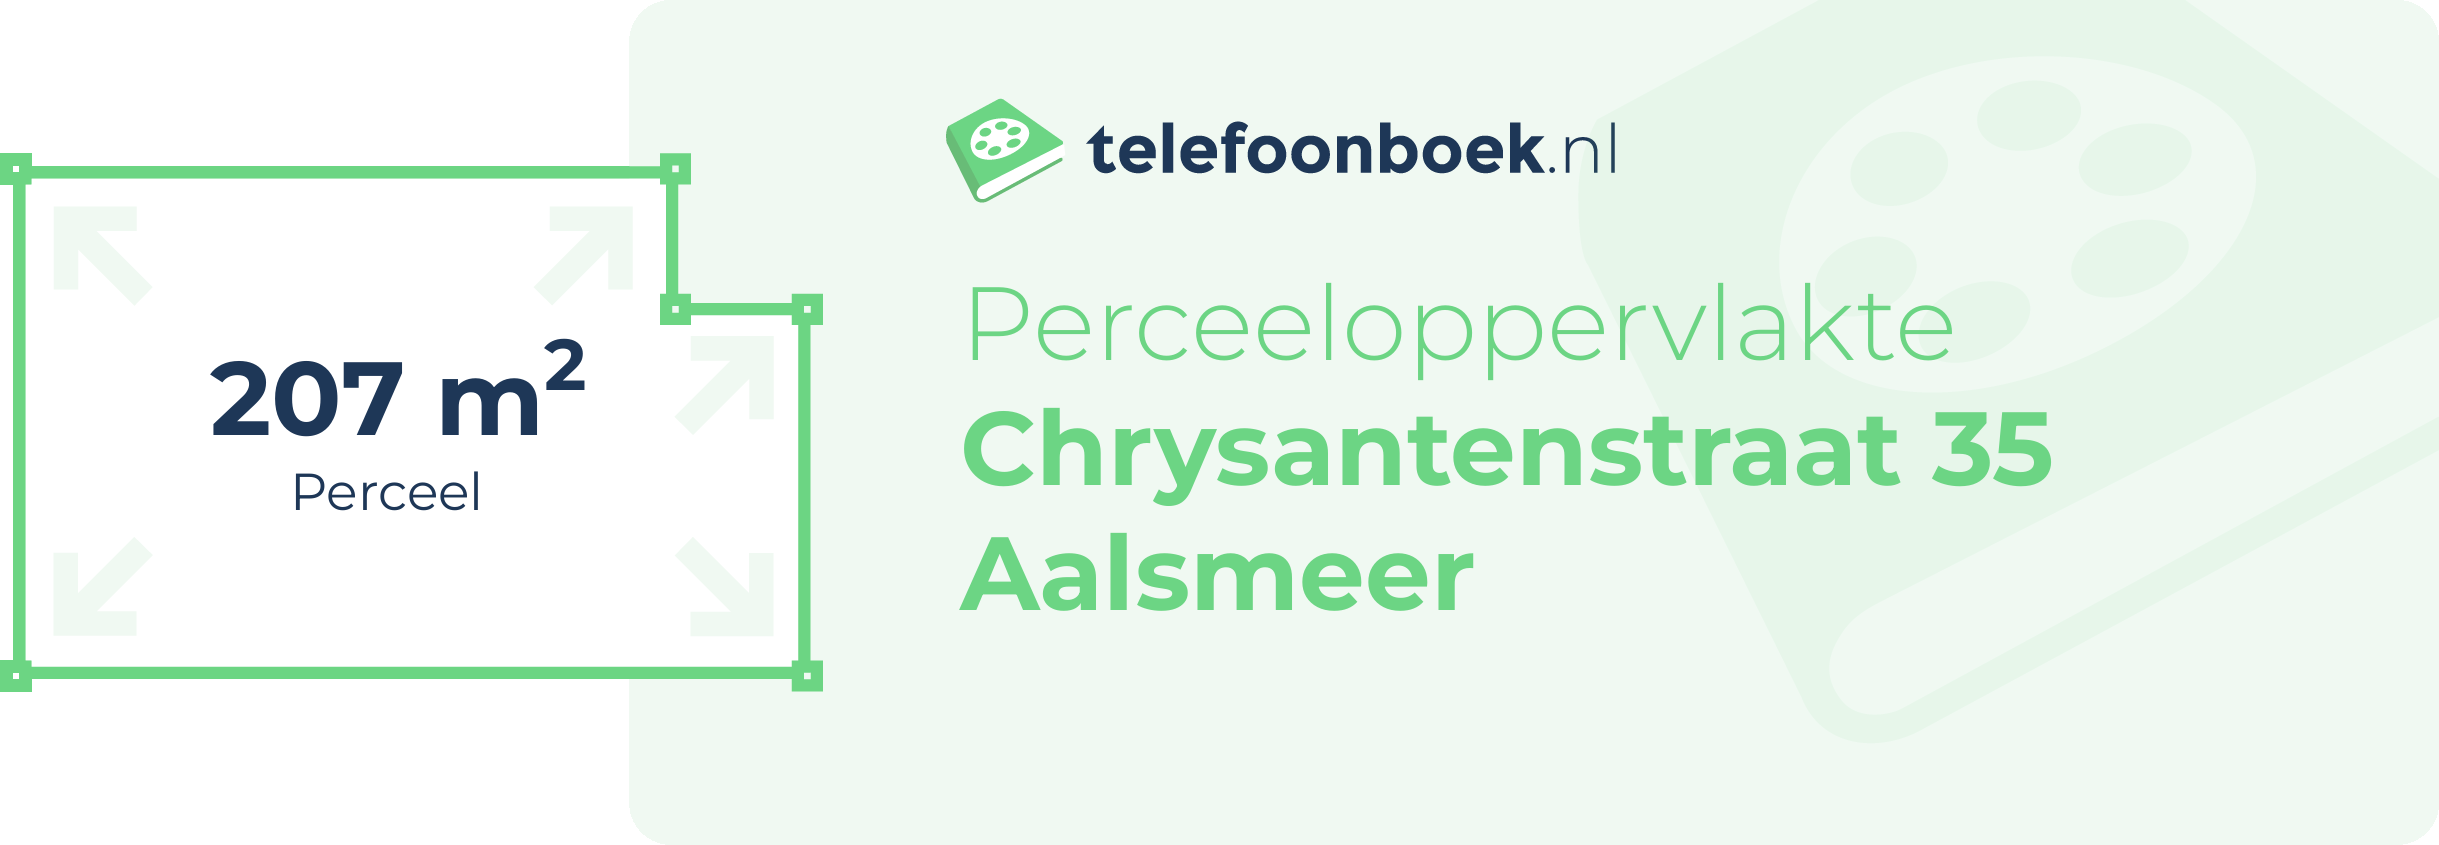 Perceeloppervlakte Chrysantenstraat 35 Aalsmeer